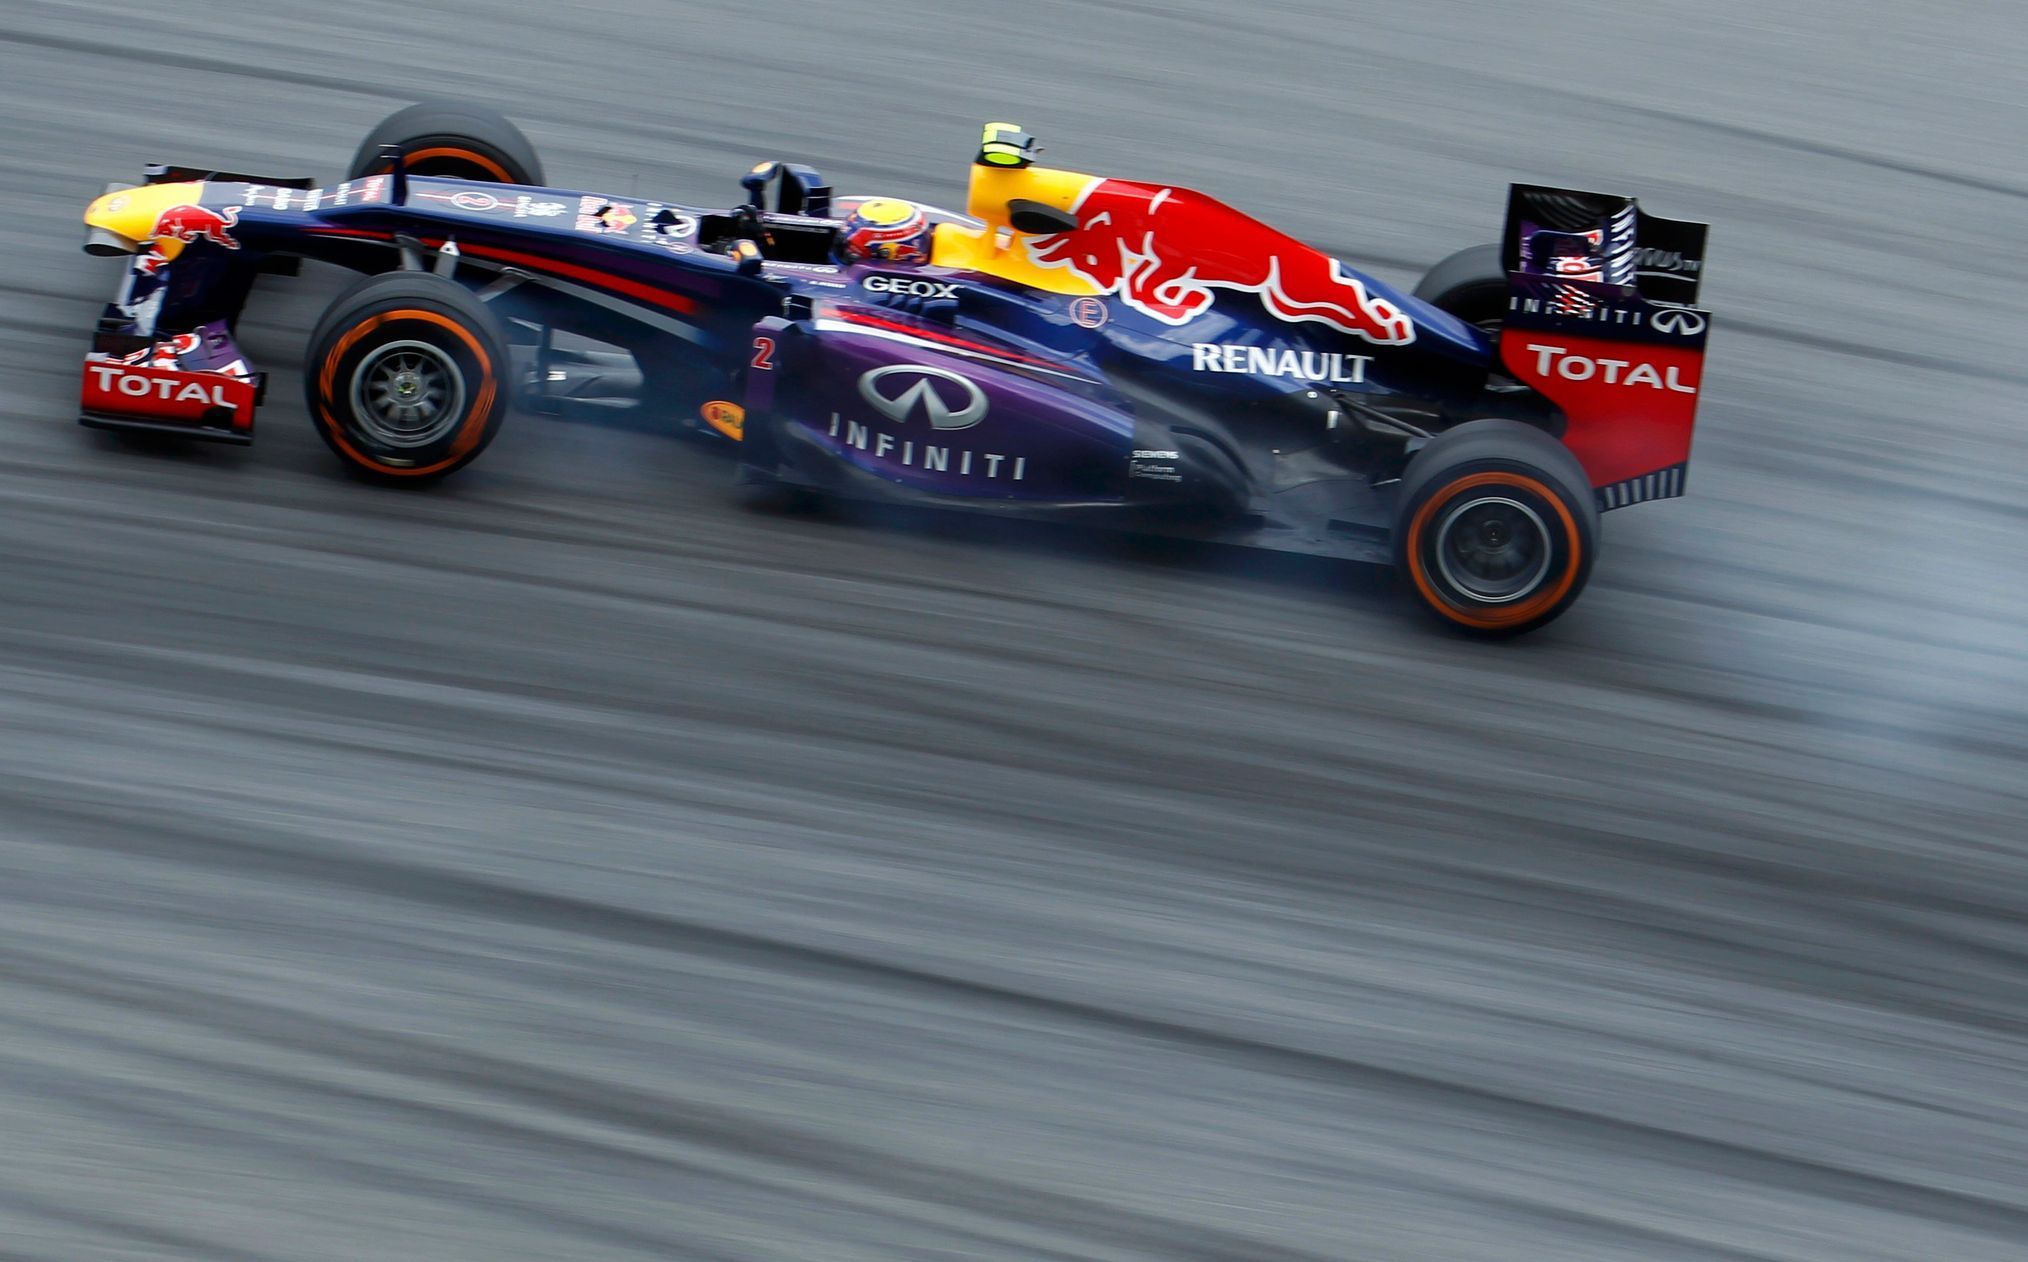 Formule 1: Mark Webber, Red Bull